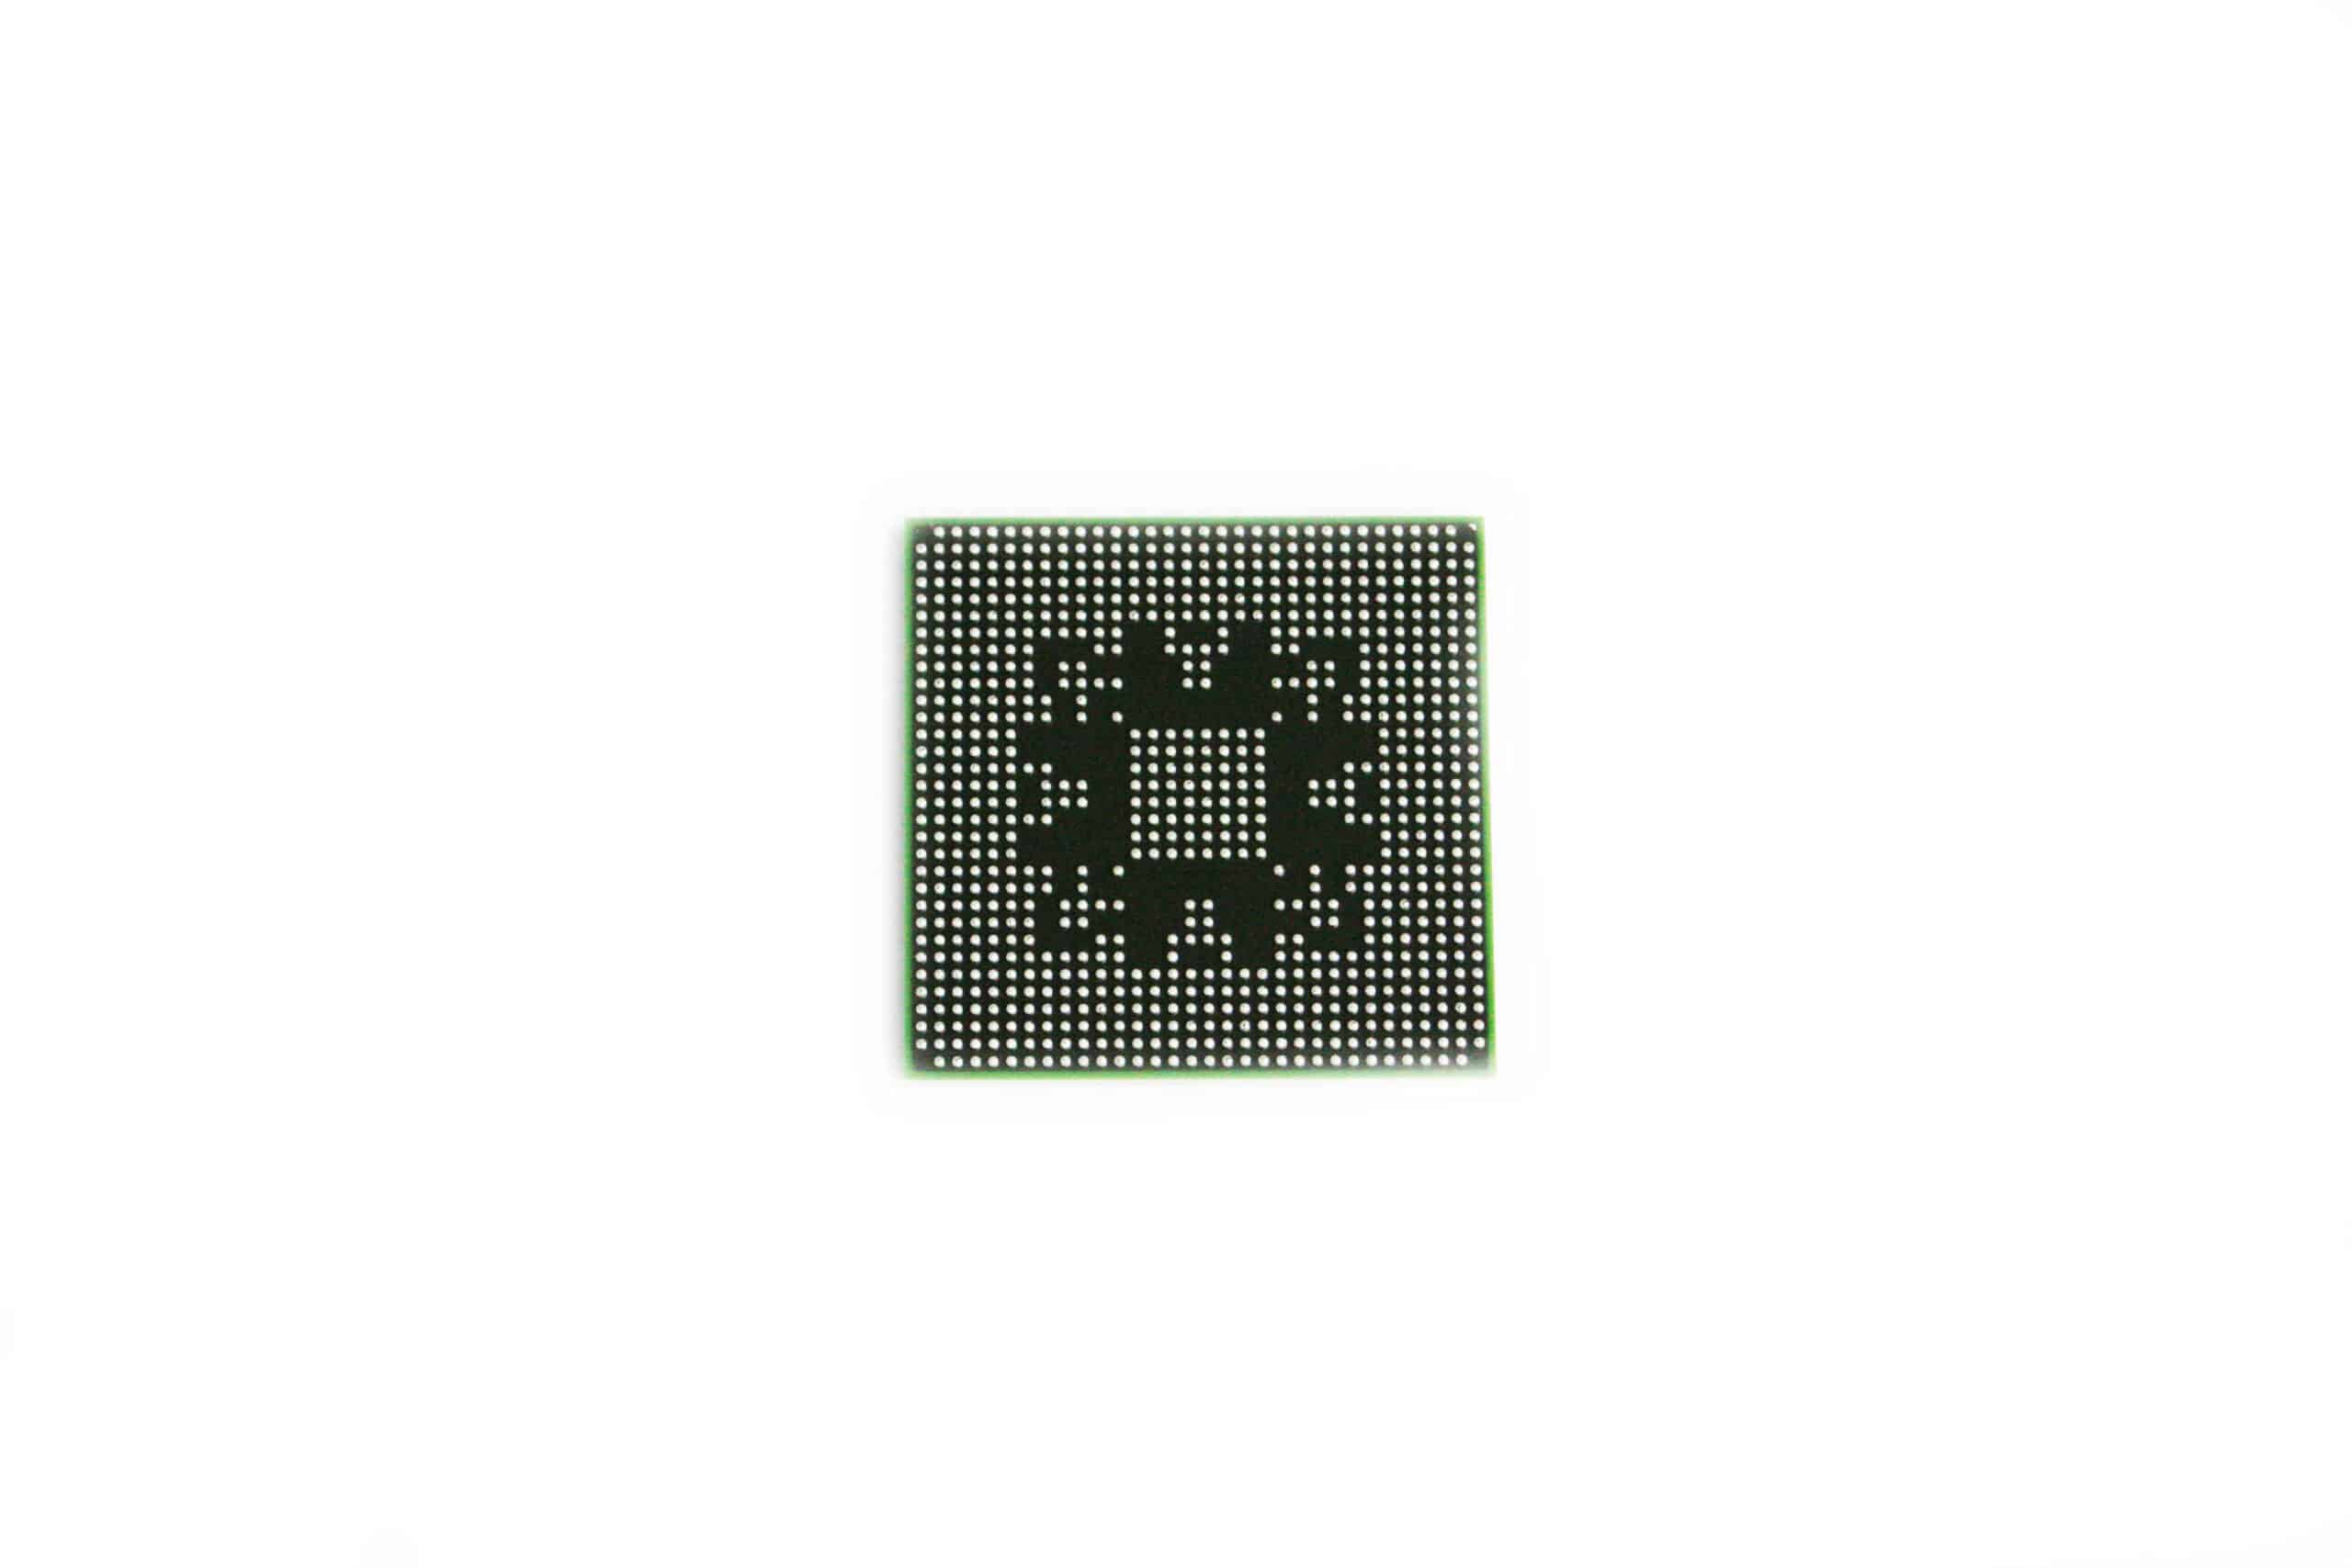 Nouvelle marque graphiques nvidia gf-go7600t-h-n-b1 puce chipset BGA GPU